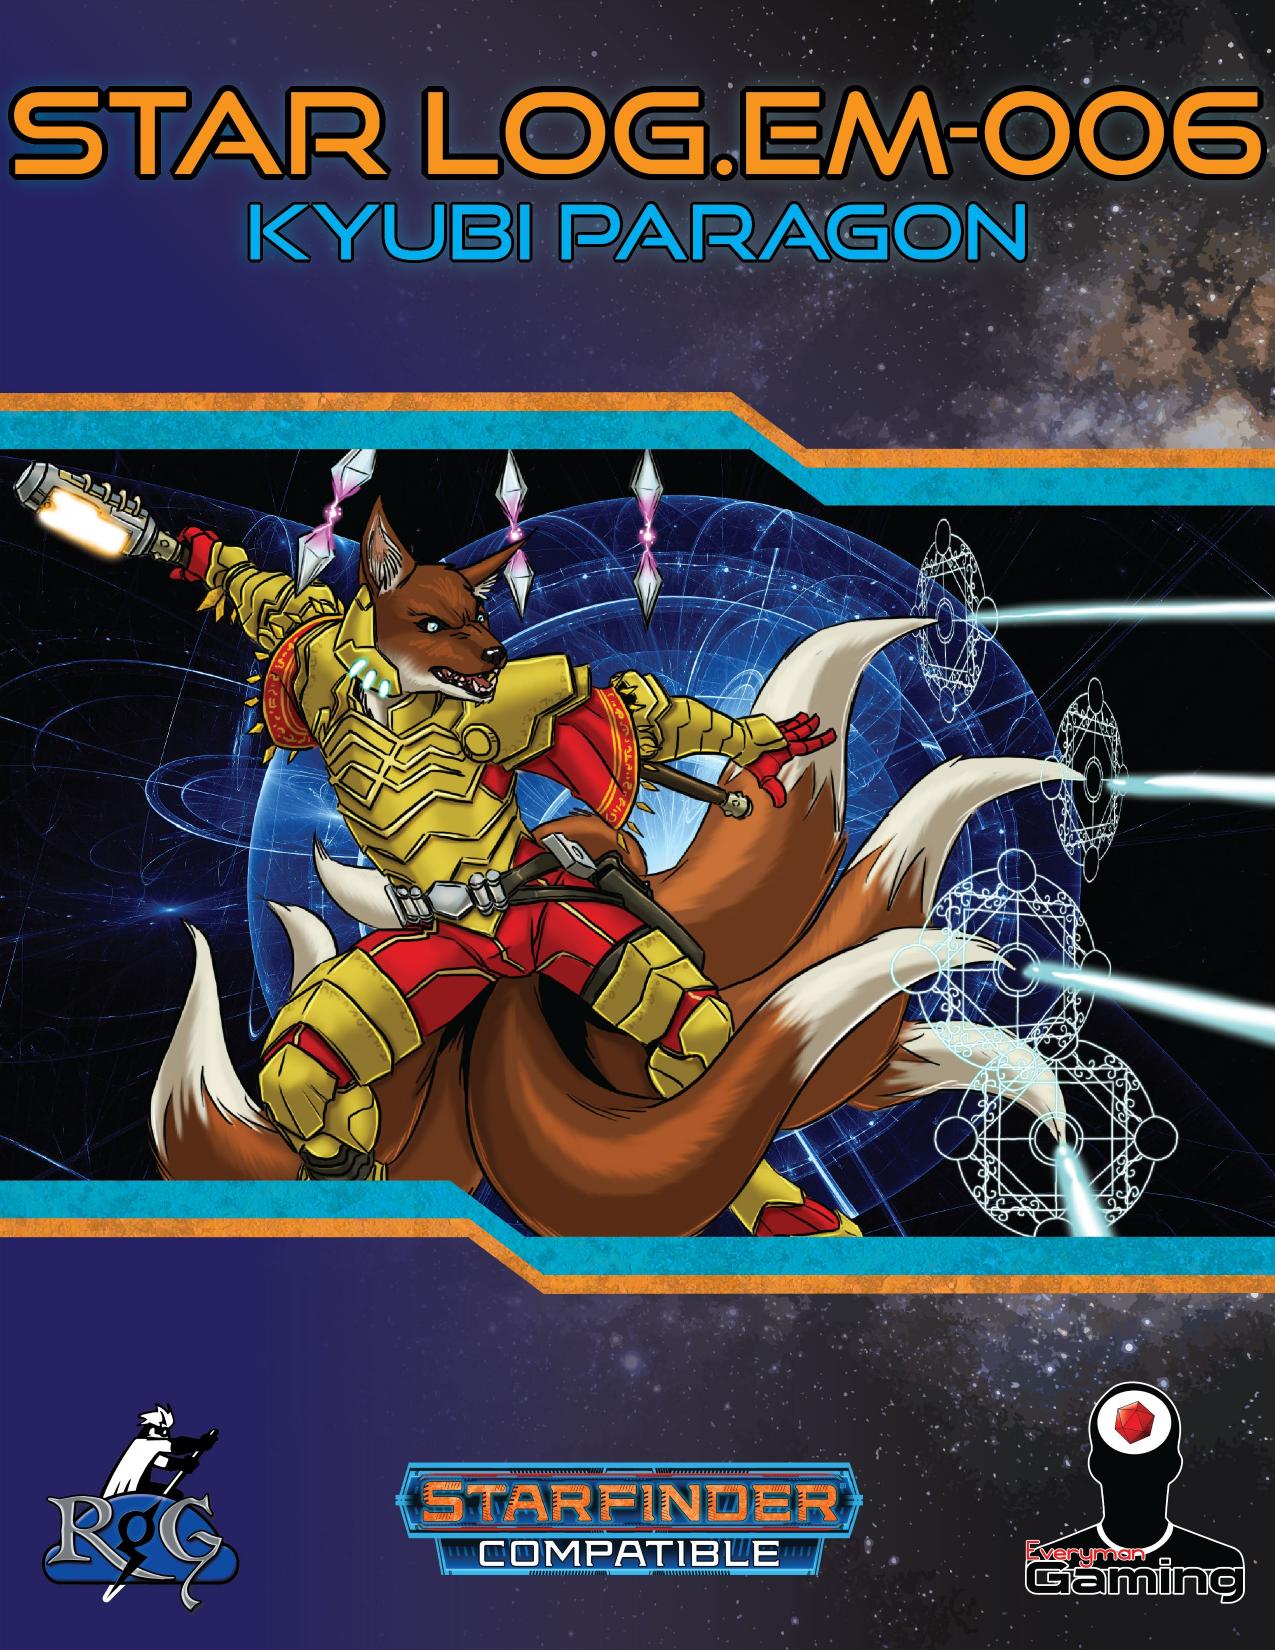 Star LogEM-006 Kyubi Paragon